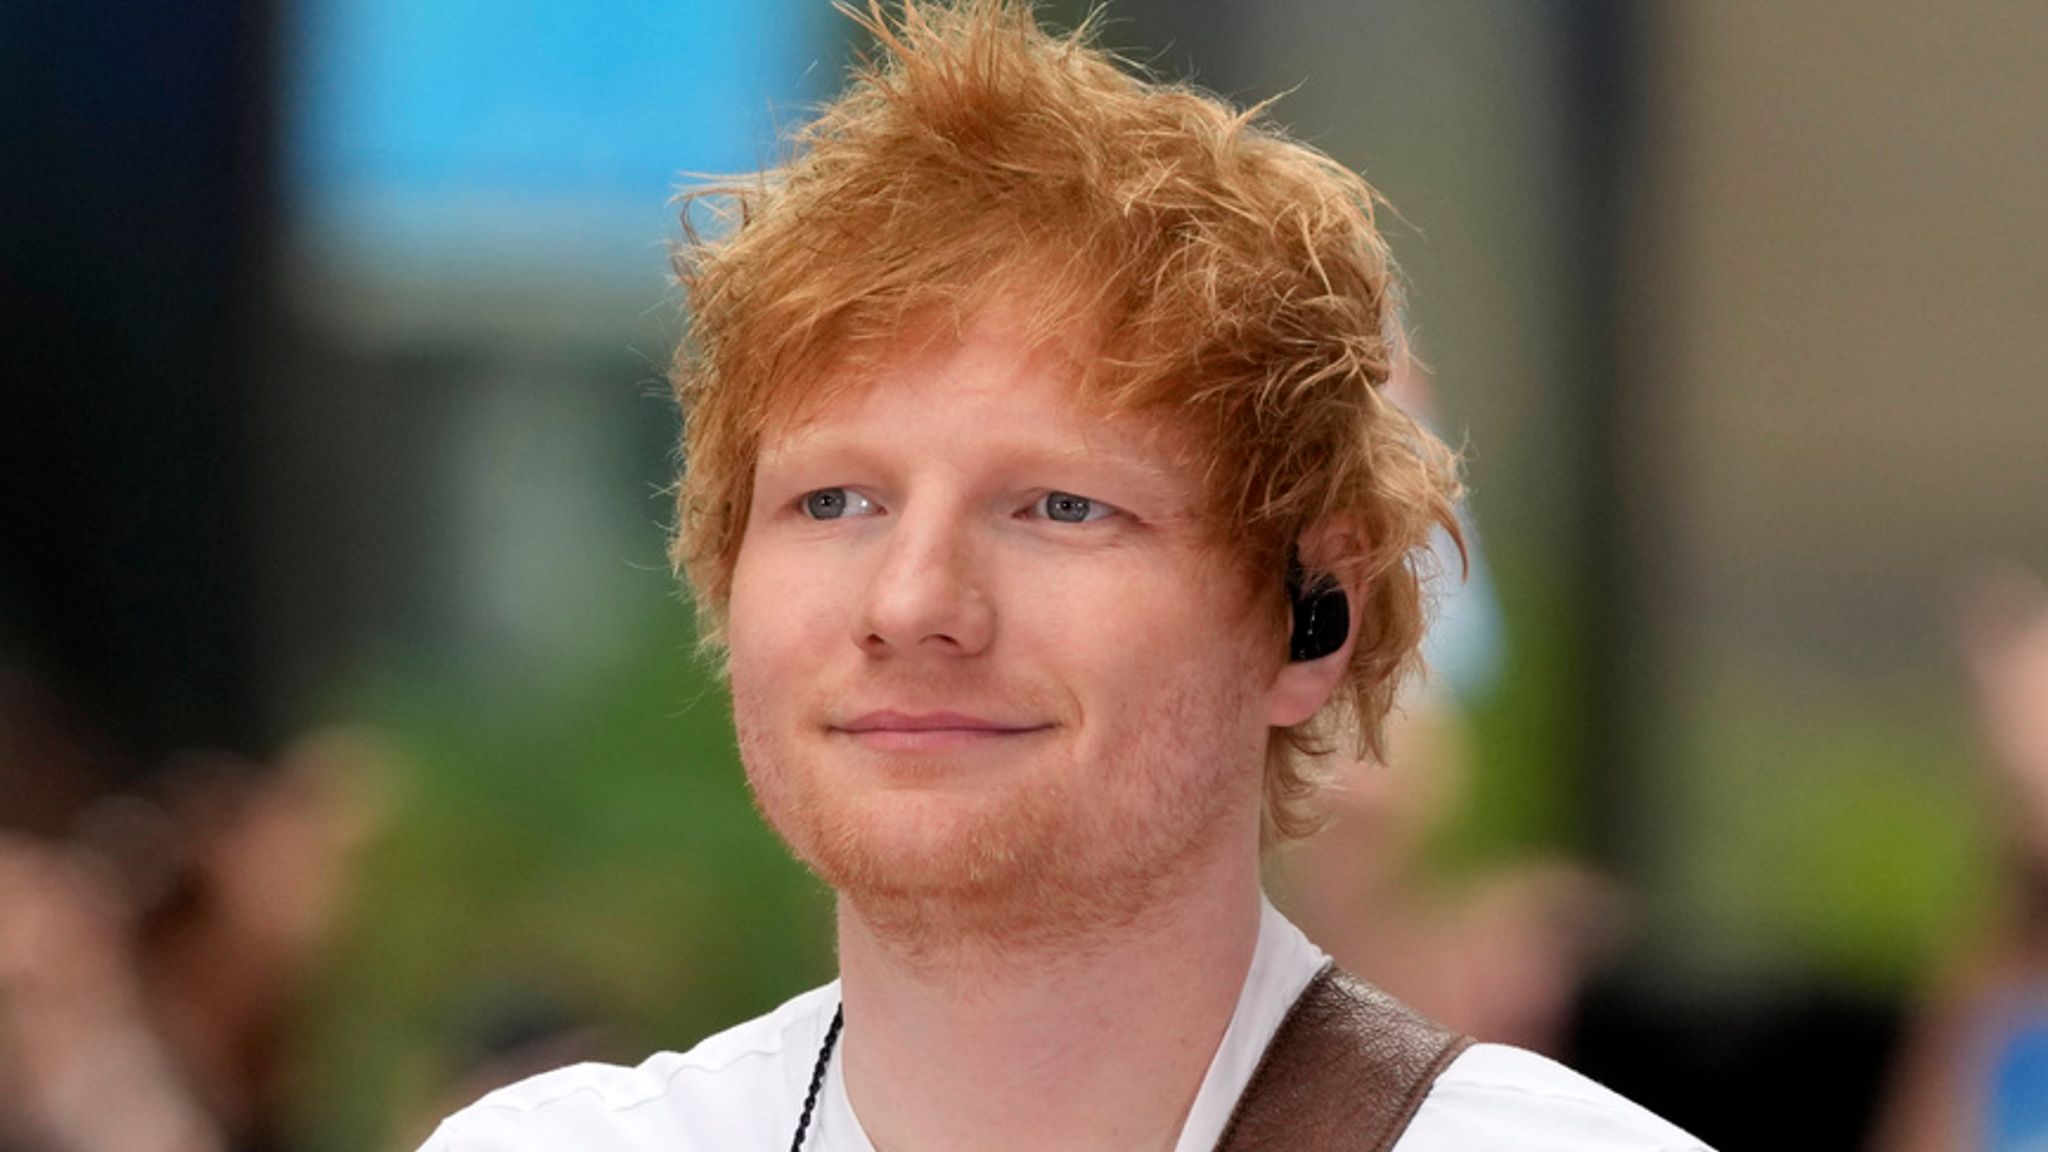 Ed Sheeran cancels Las Vegas show over 'flooring issues', Ents & Arts News